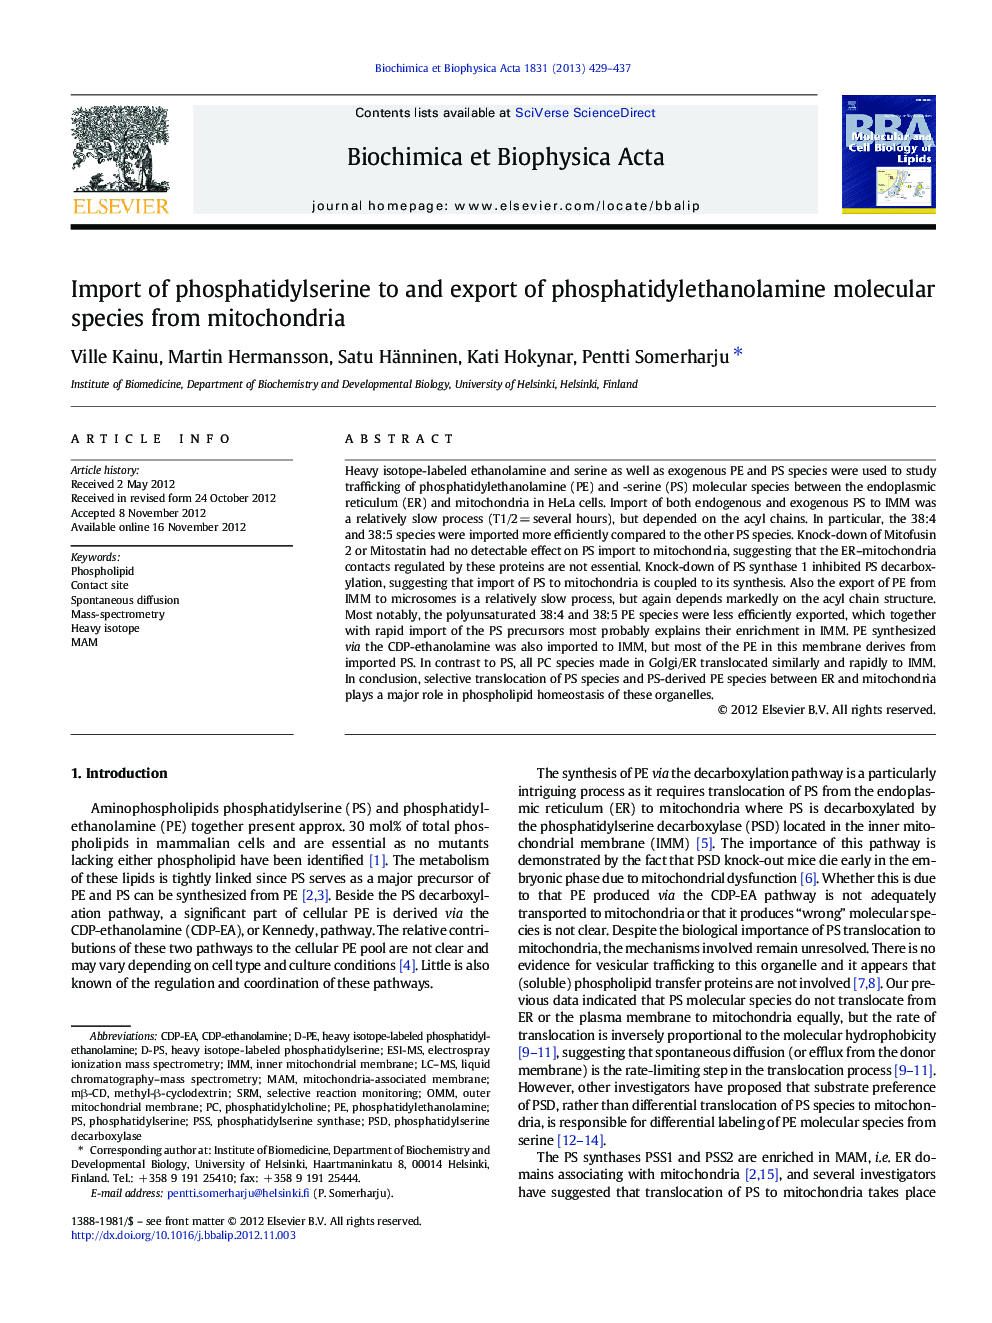 واردات فسفاتیدیلسرین و صادرات گونه های مولکولی فسفاتیدیلتانولامین از میتوکندری ها 